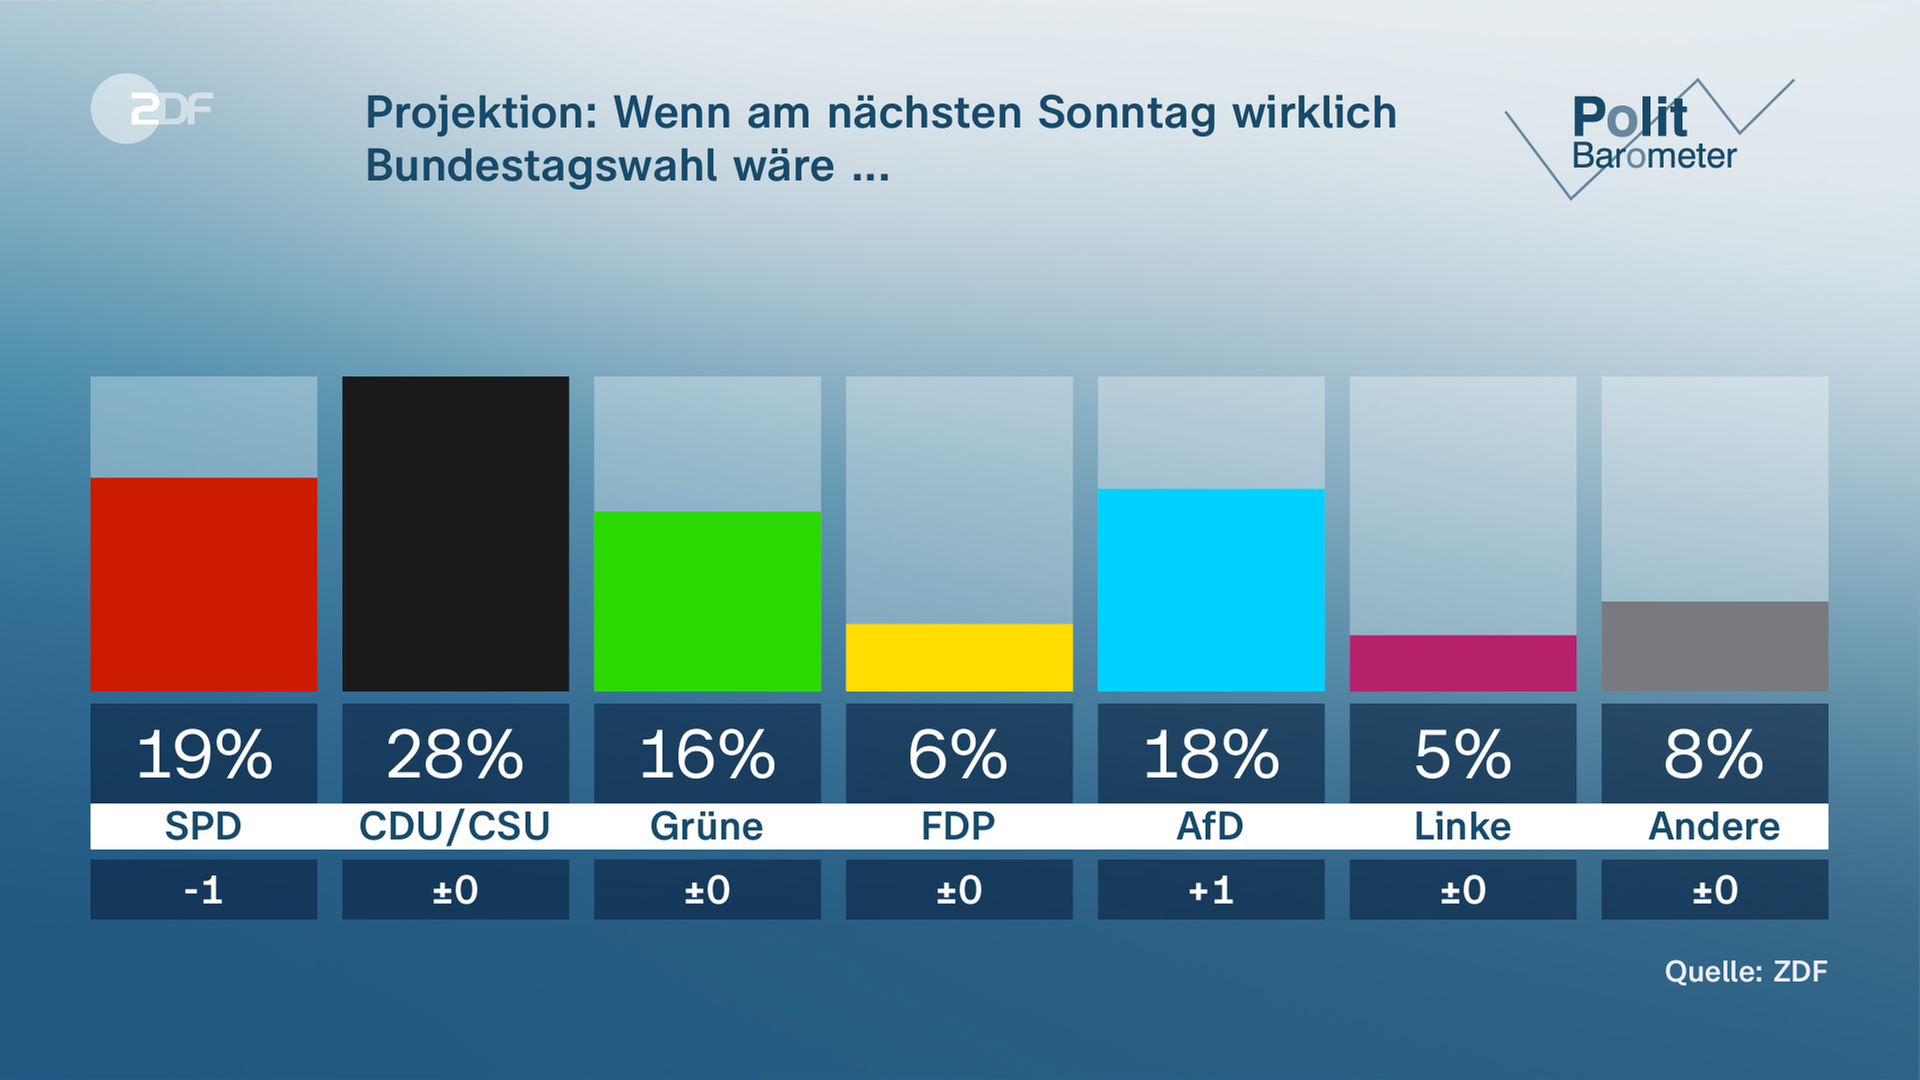 Das Bild zeigt die aktuellen Umfrageergebnisse der Parteien im ZDF-Politbarometer.